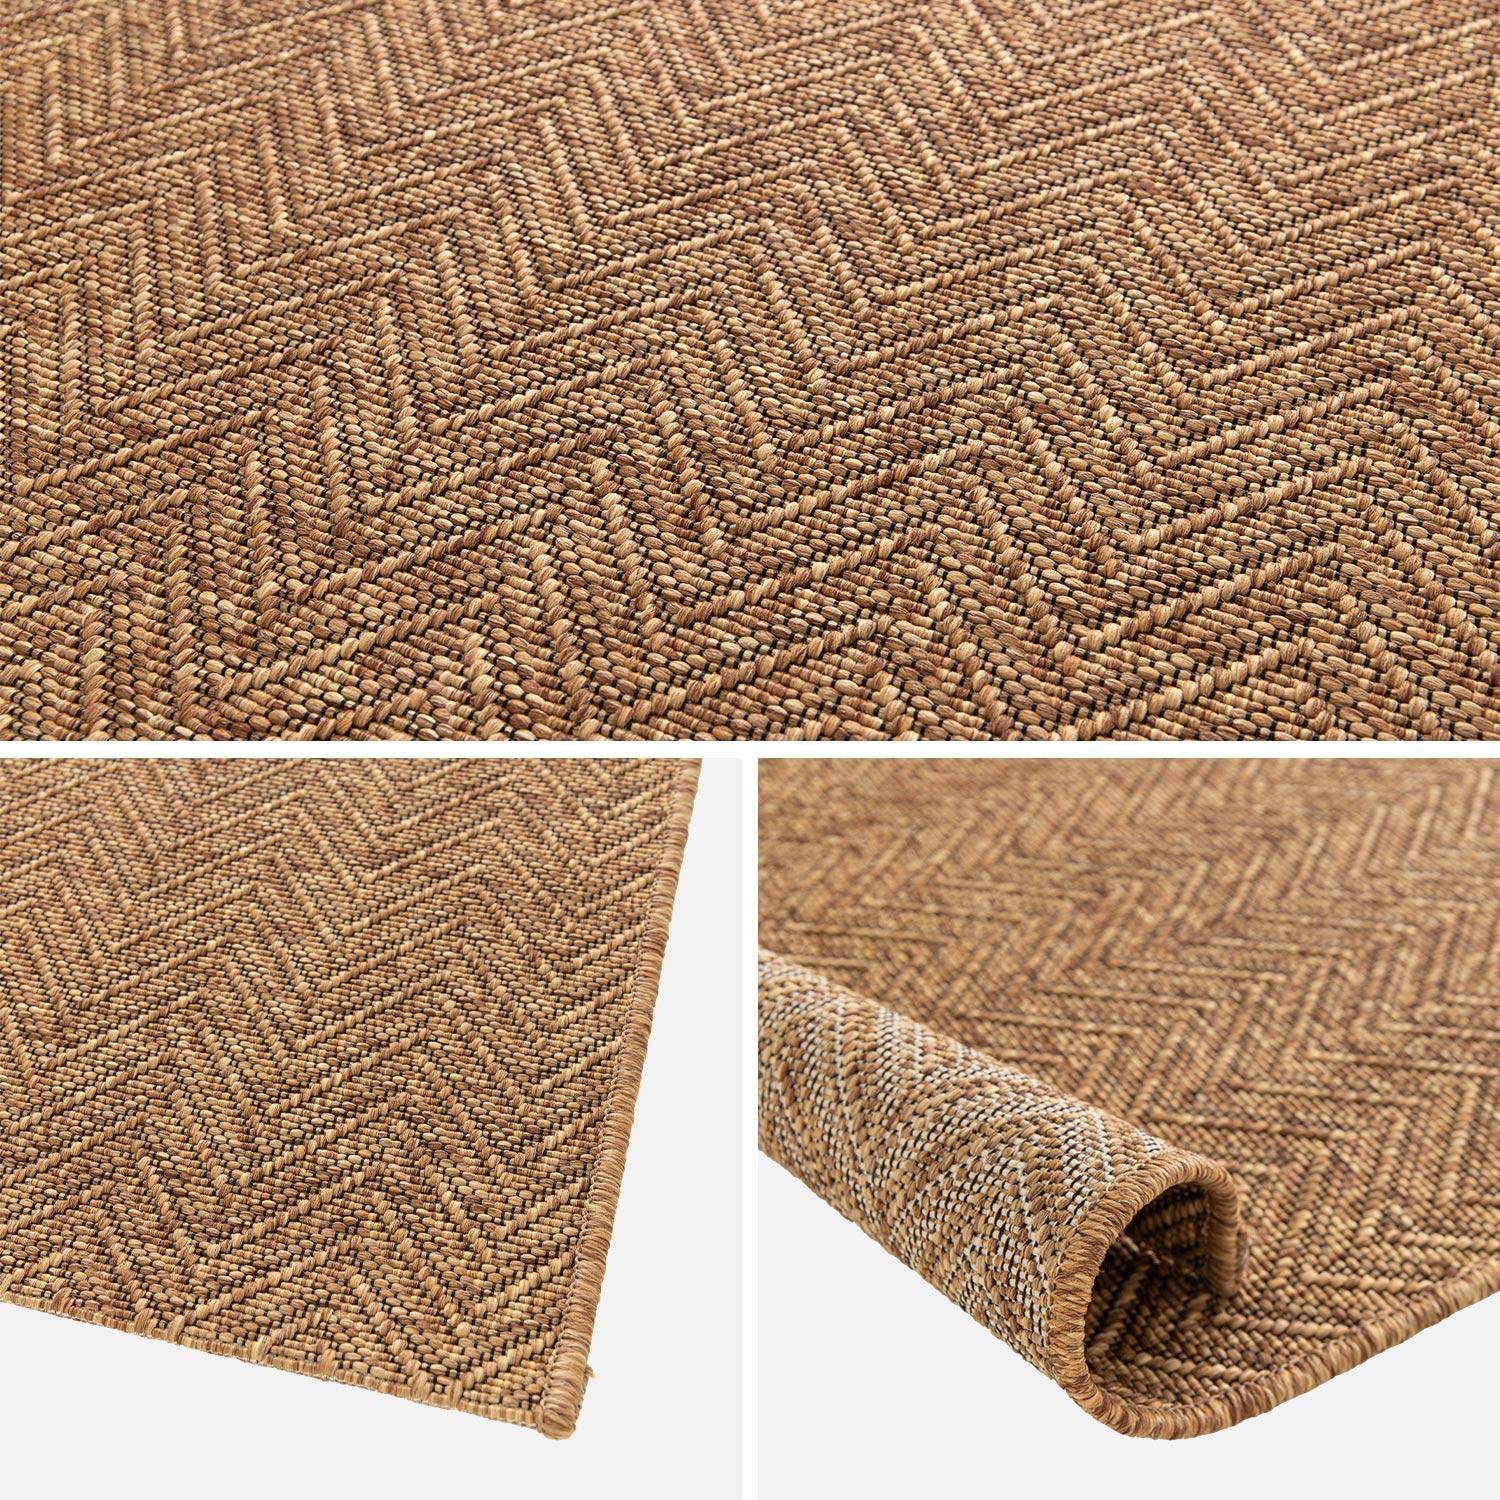 Jute-effect indoor/outdoor carpet in caramel, Oliver, 120 x 170 cm,sweeek,Photo5